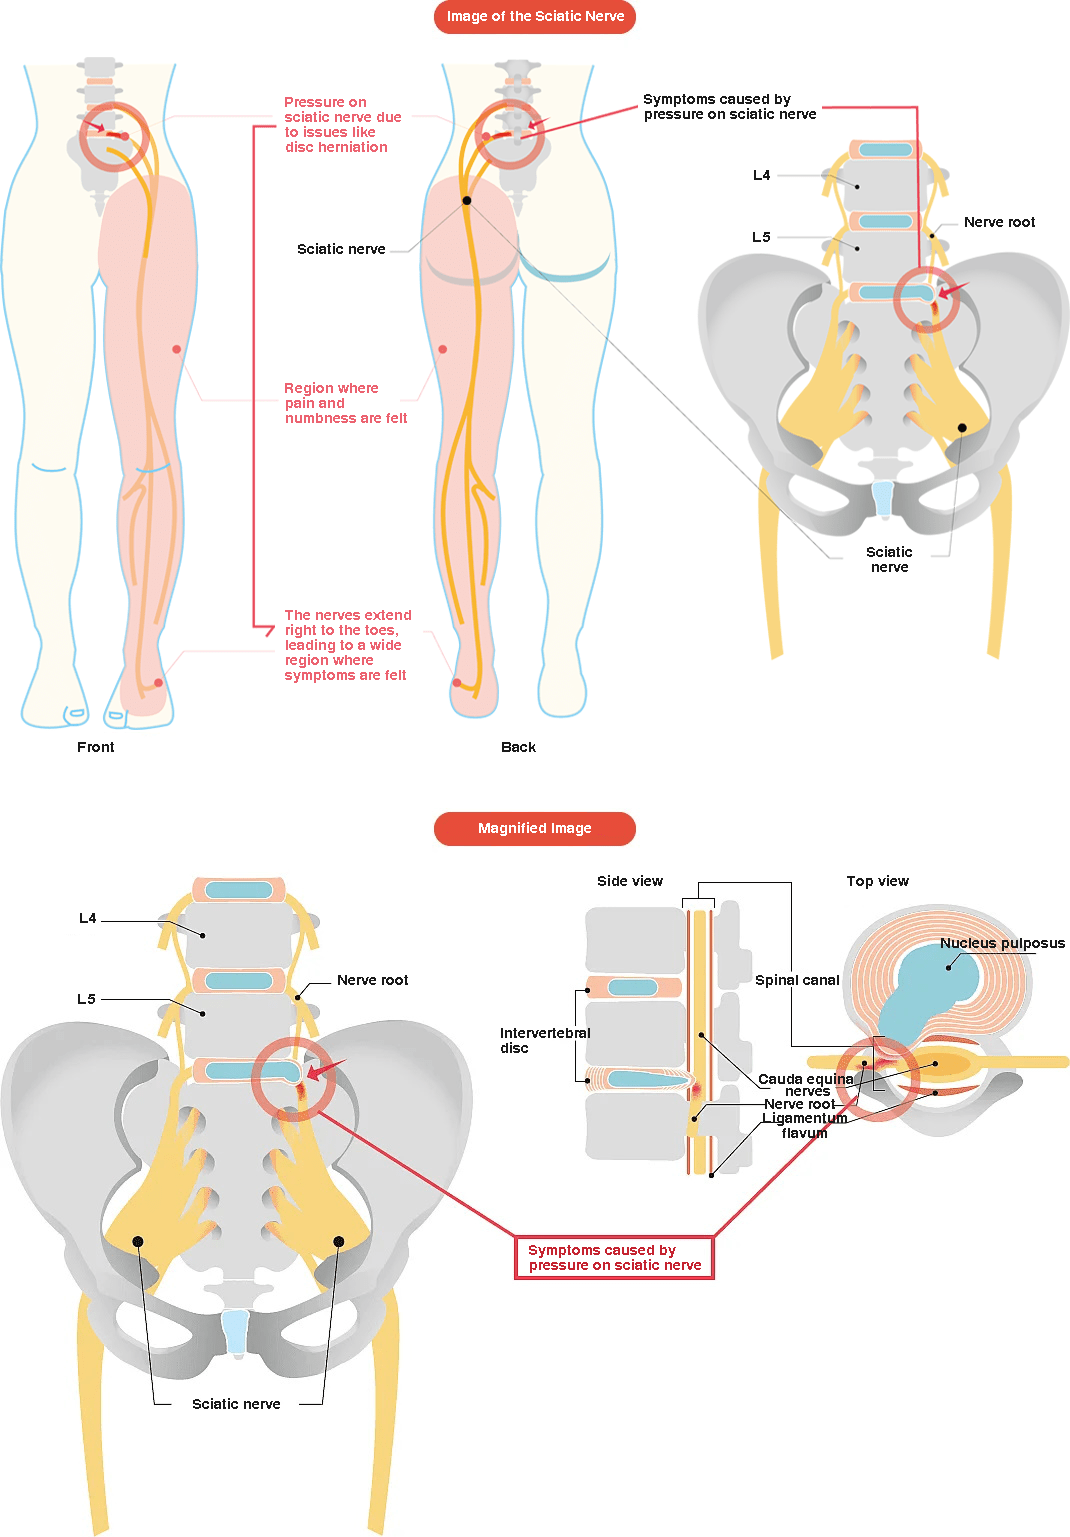 Image of sciatic nerve